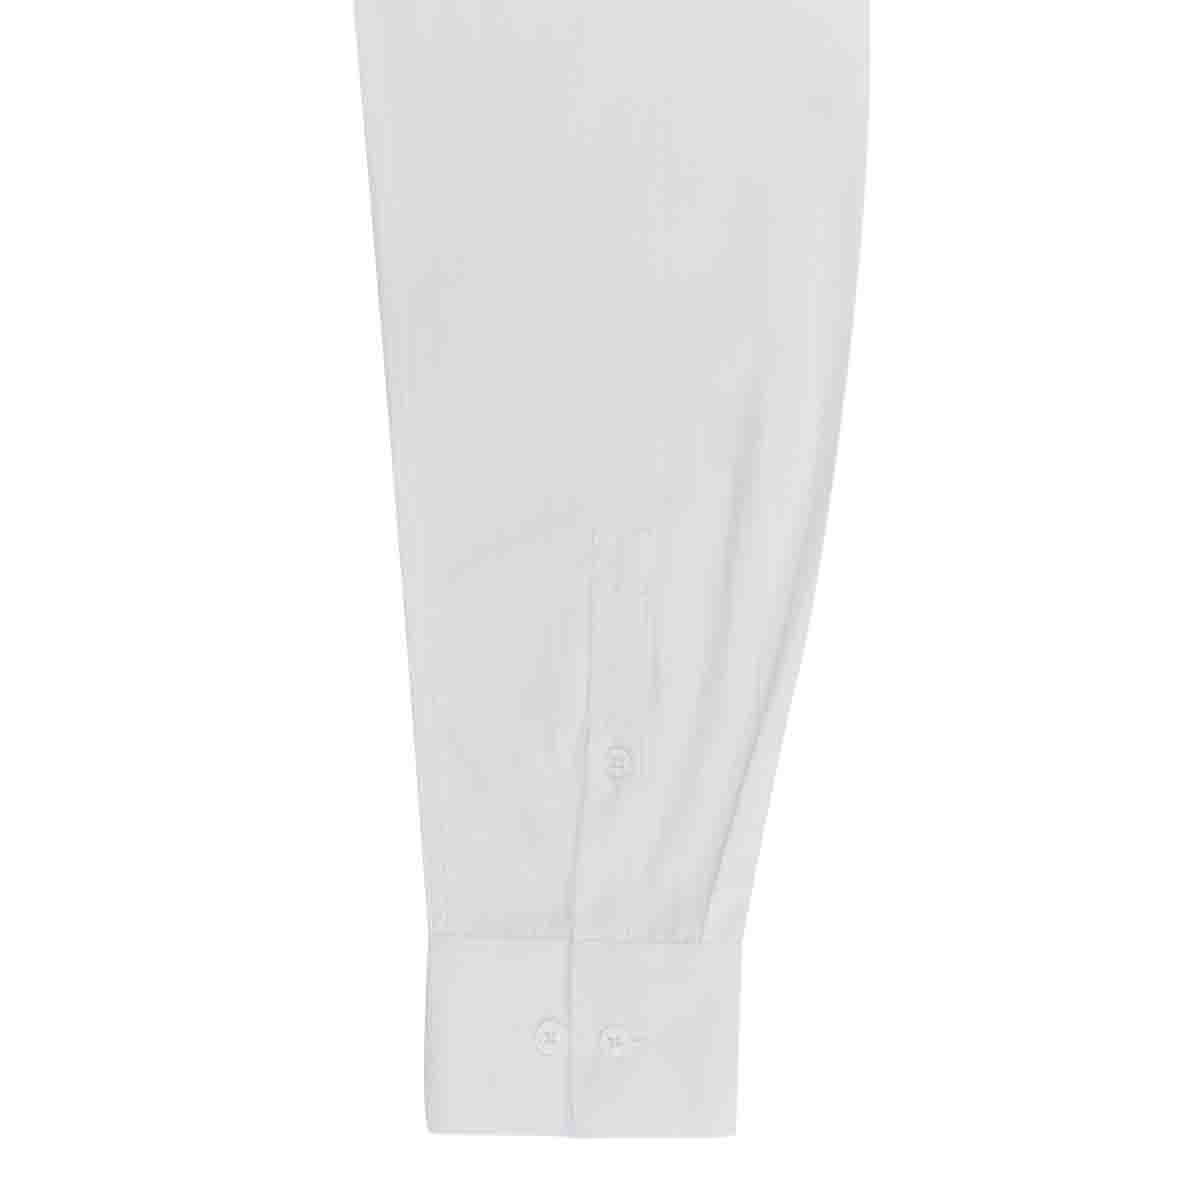 Camisa de Vestir Blanca Corte Slim Chaps para Caballero